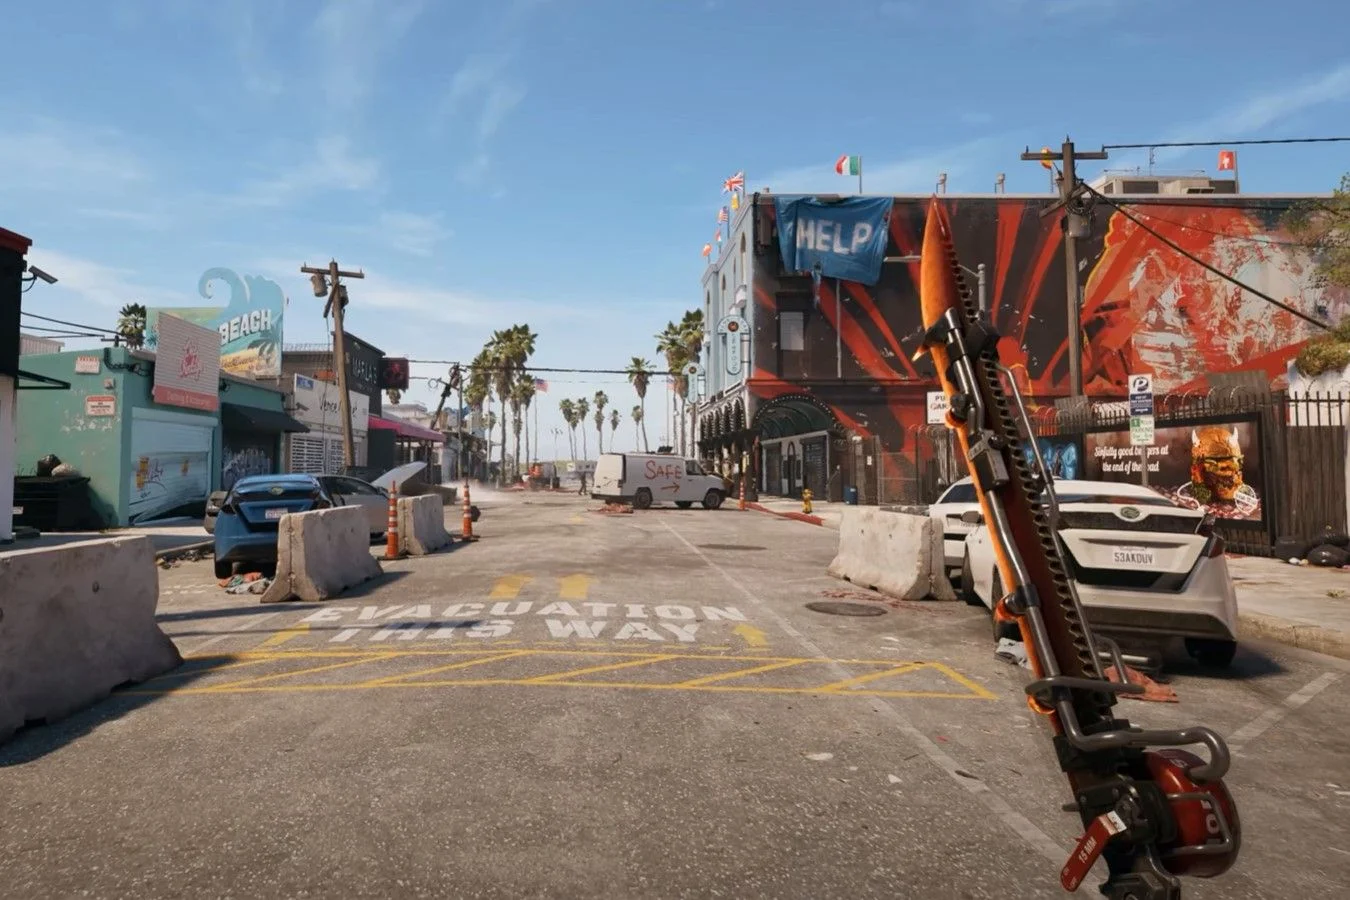 Лос-Анджелес из Dead Island 2 и из реальности сравнили. Город вышел реалистичным